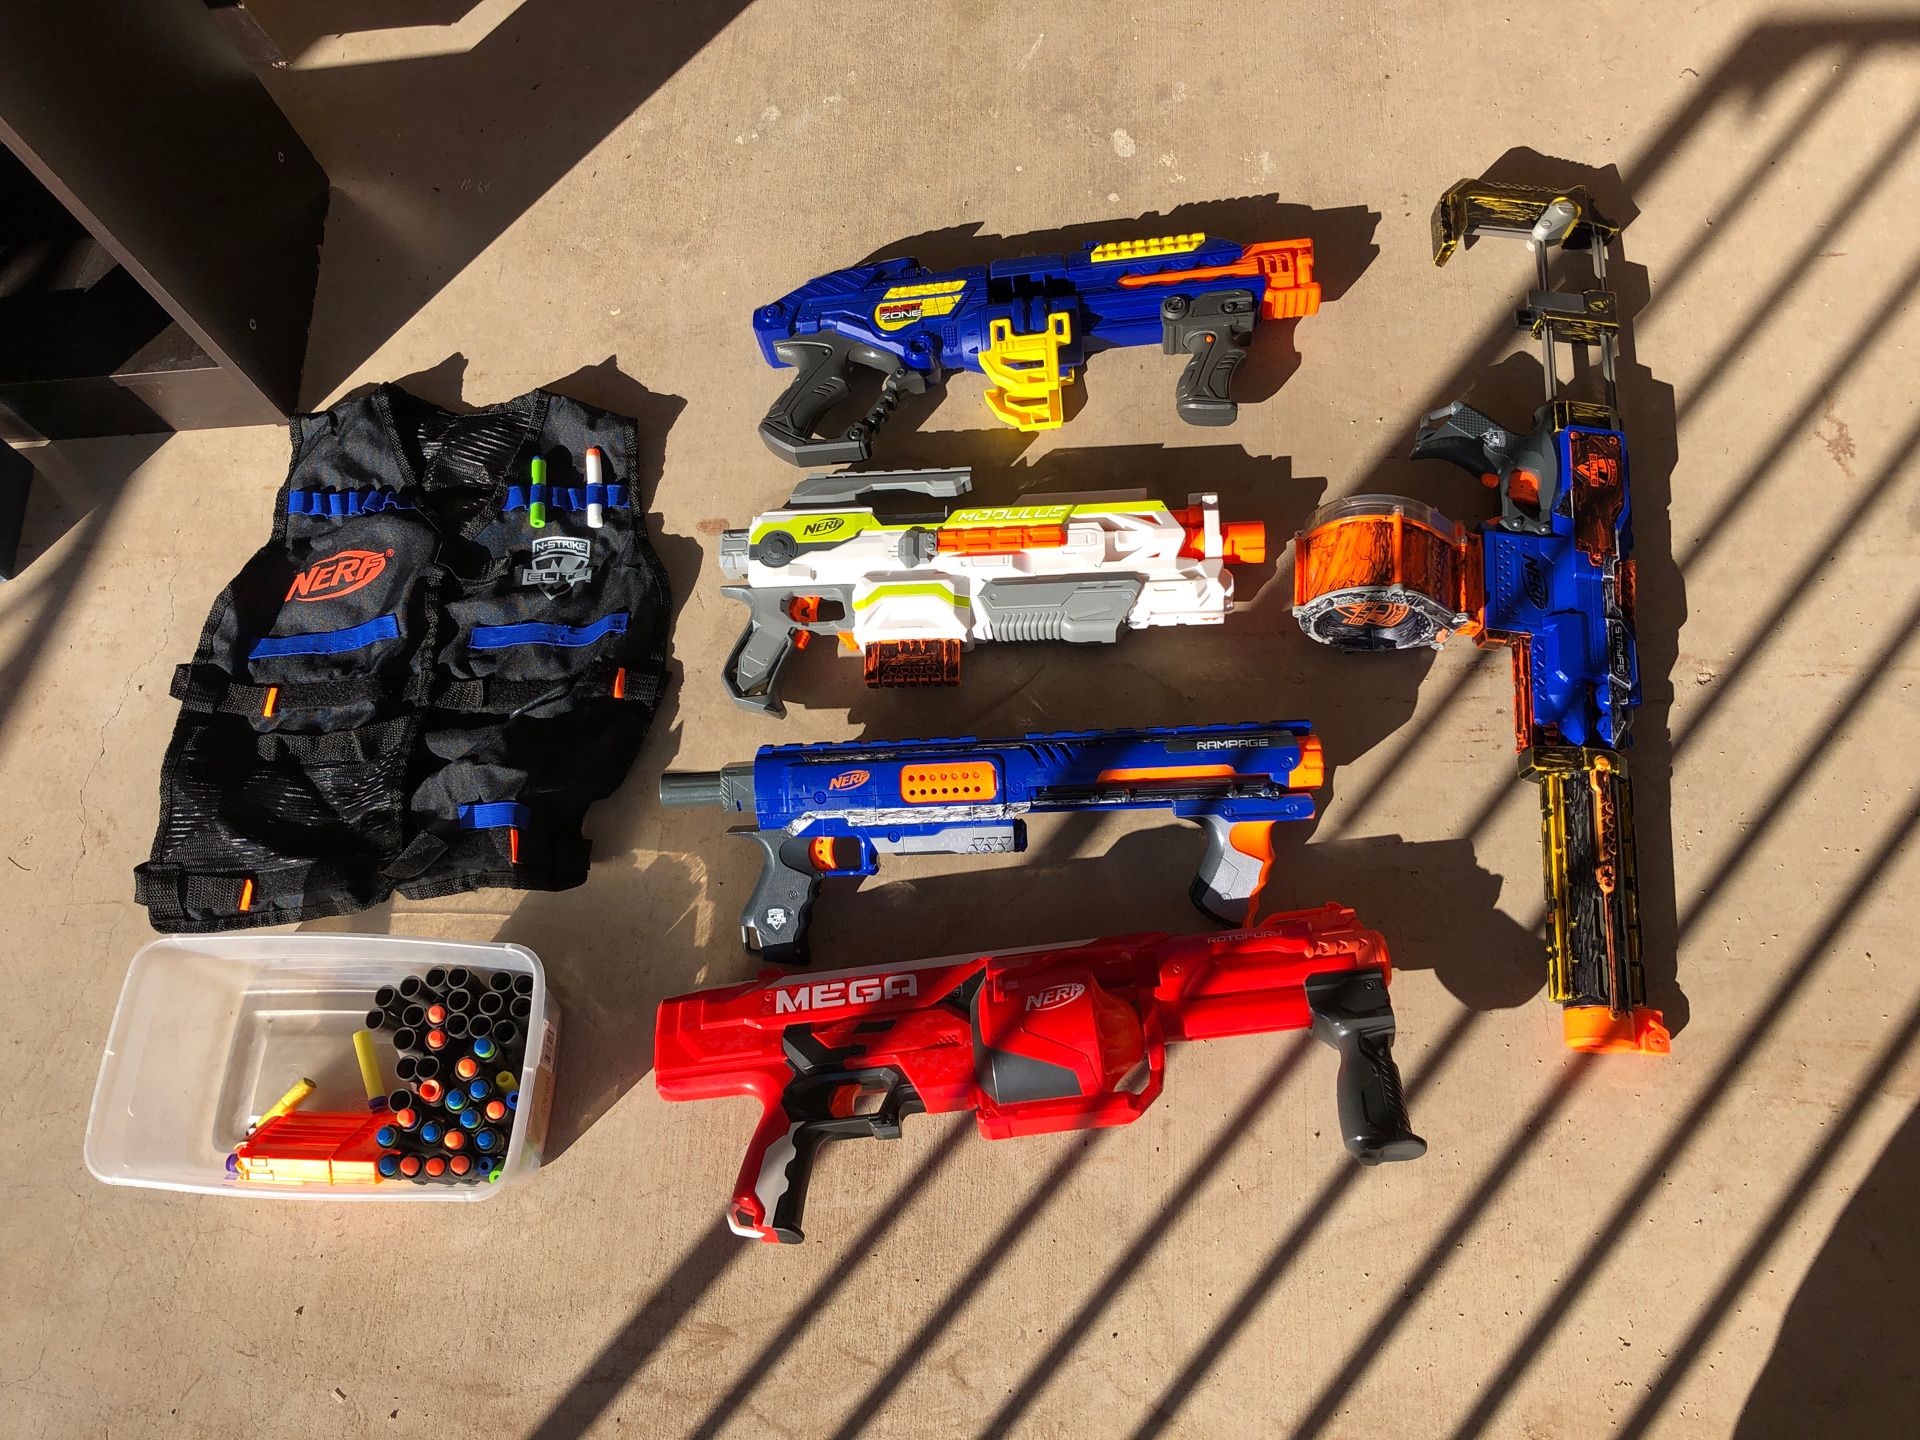 Assorted NERF guns